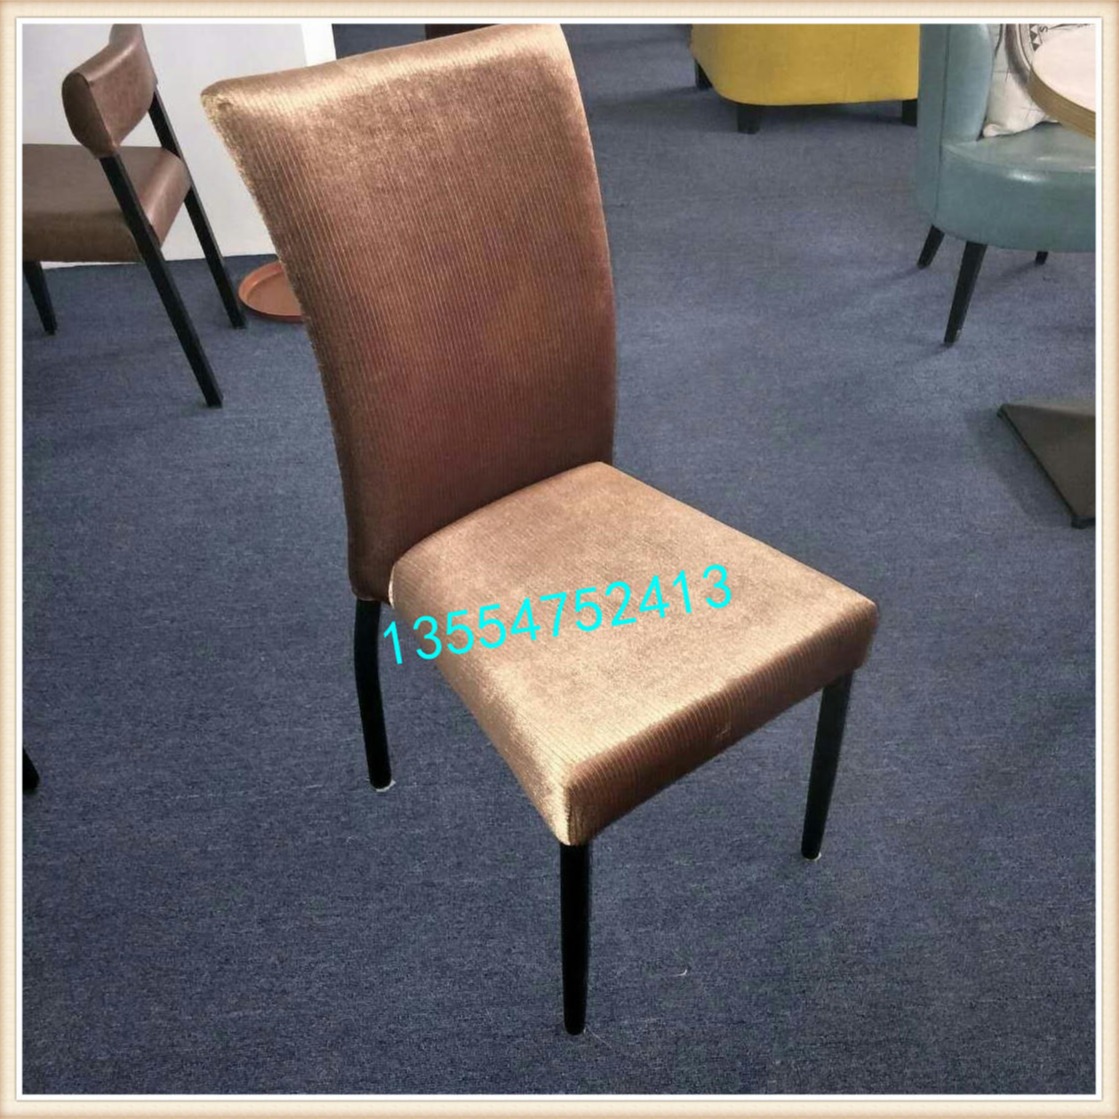 深圳众美德生产酒店餐椅  CY-101金属椅子 餐厅软包椅子批发中心图片